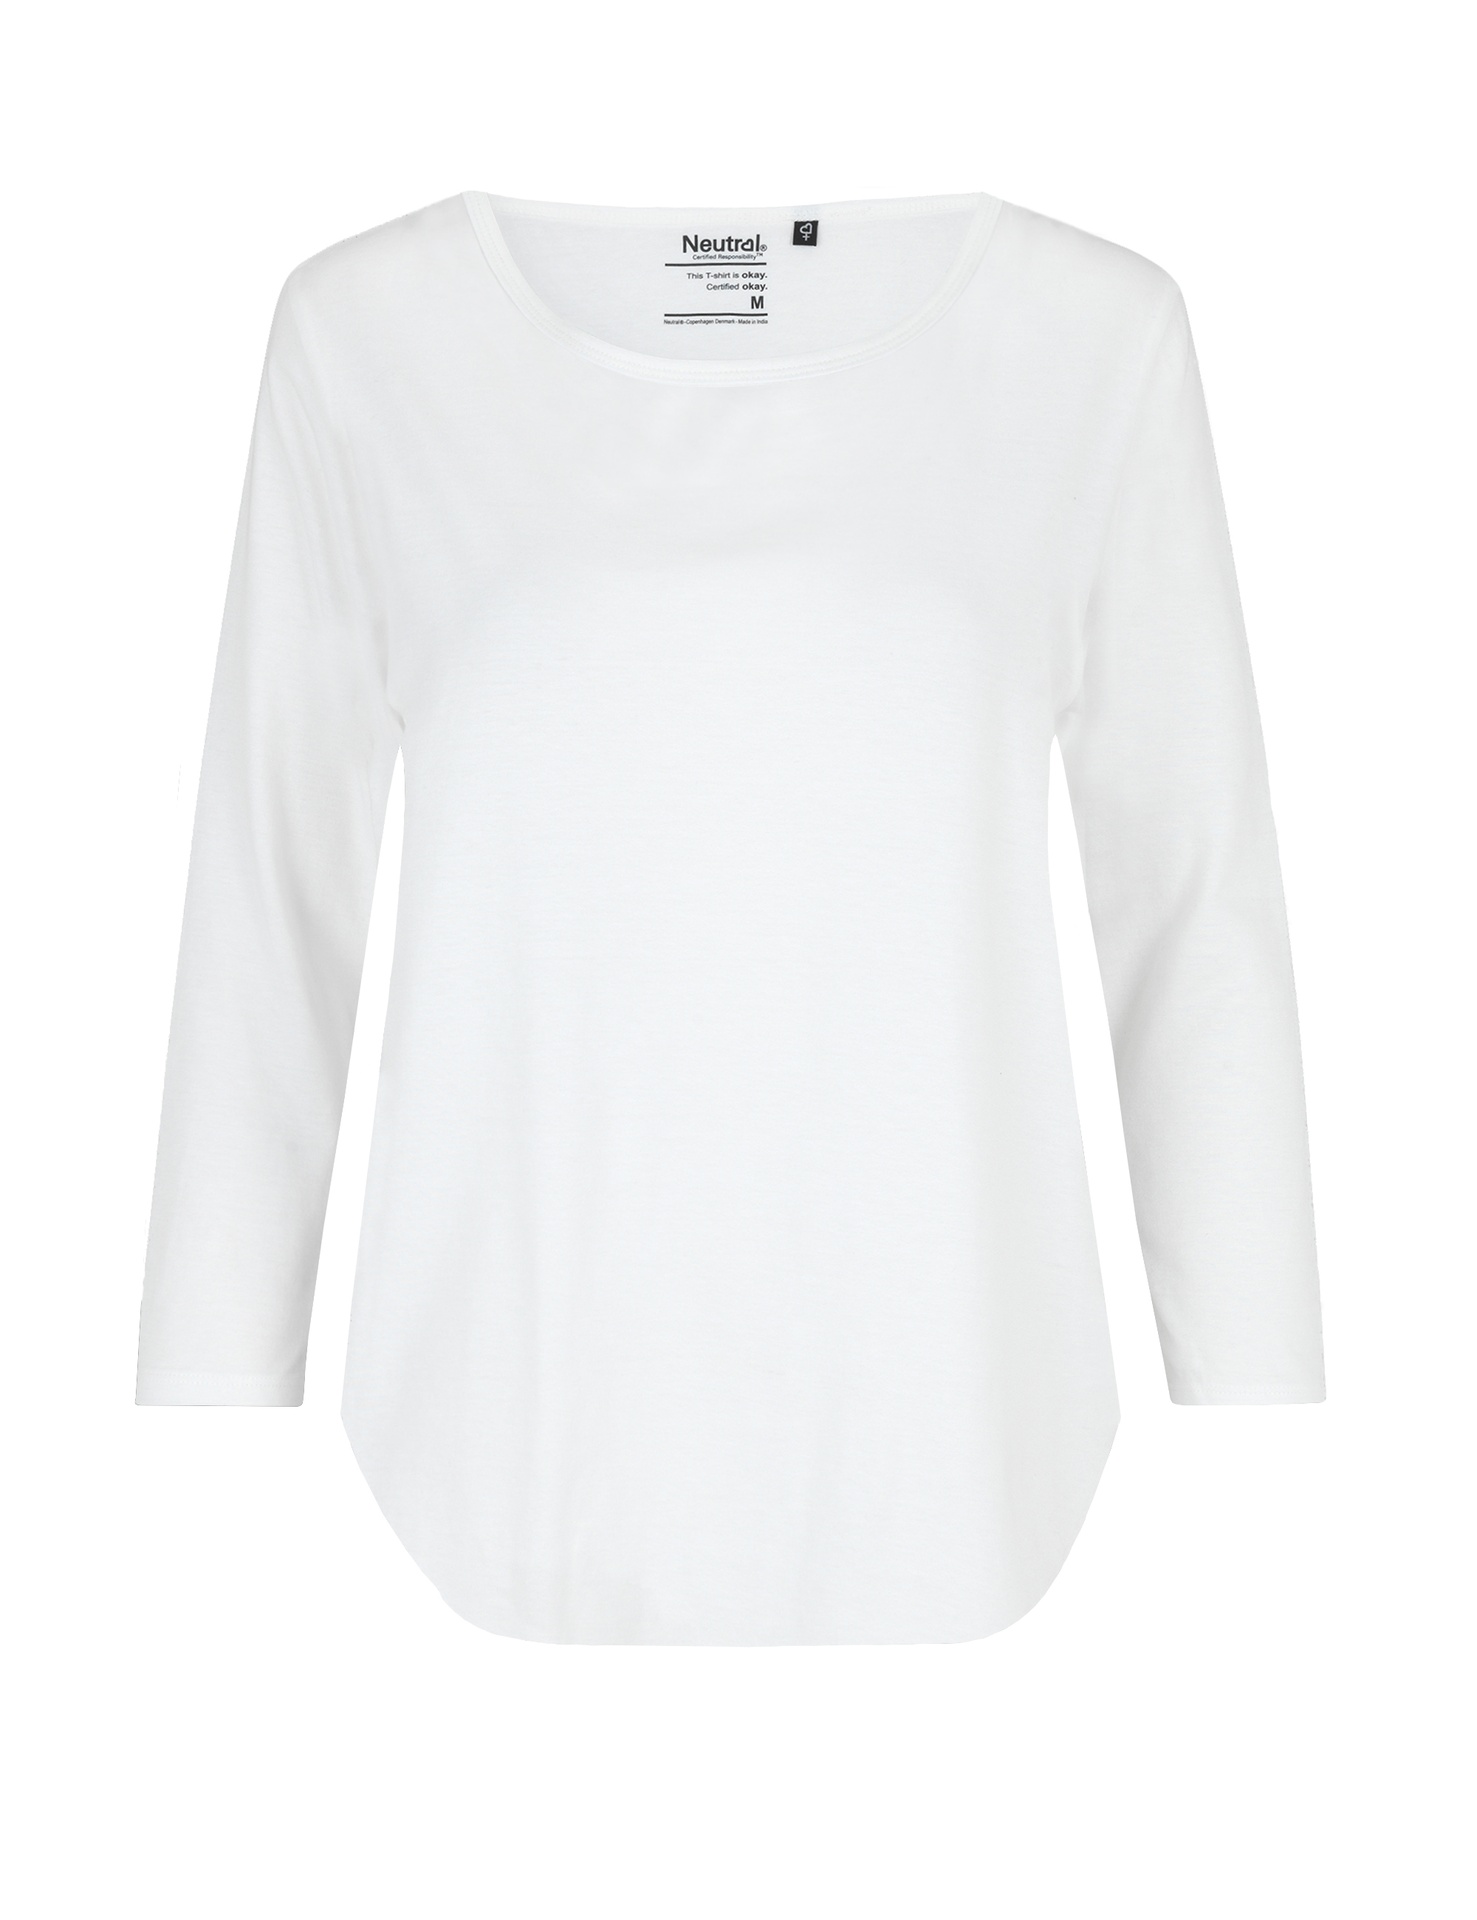 [PR/04521] Ladies Three Quarter Sleeve T-Shirt (White 01, M)